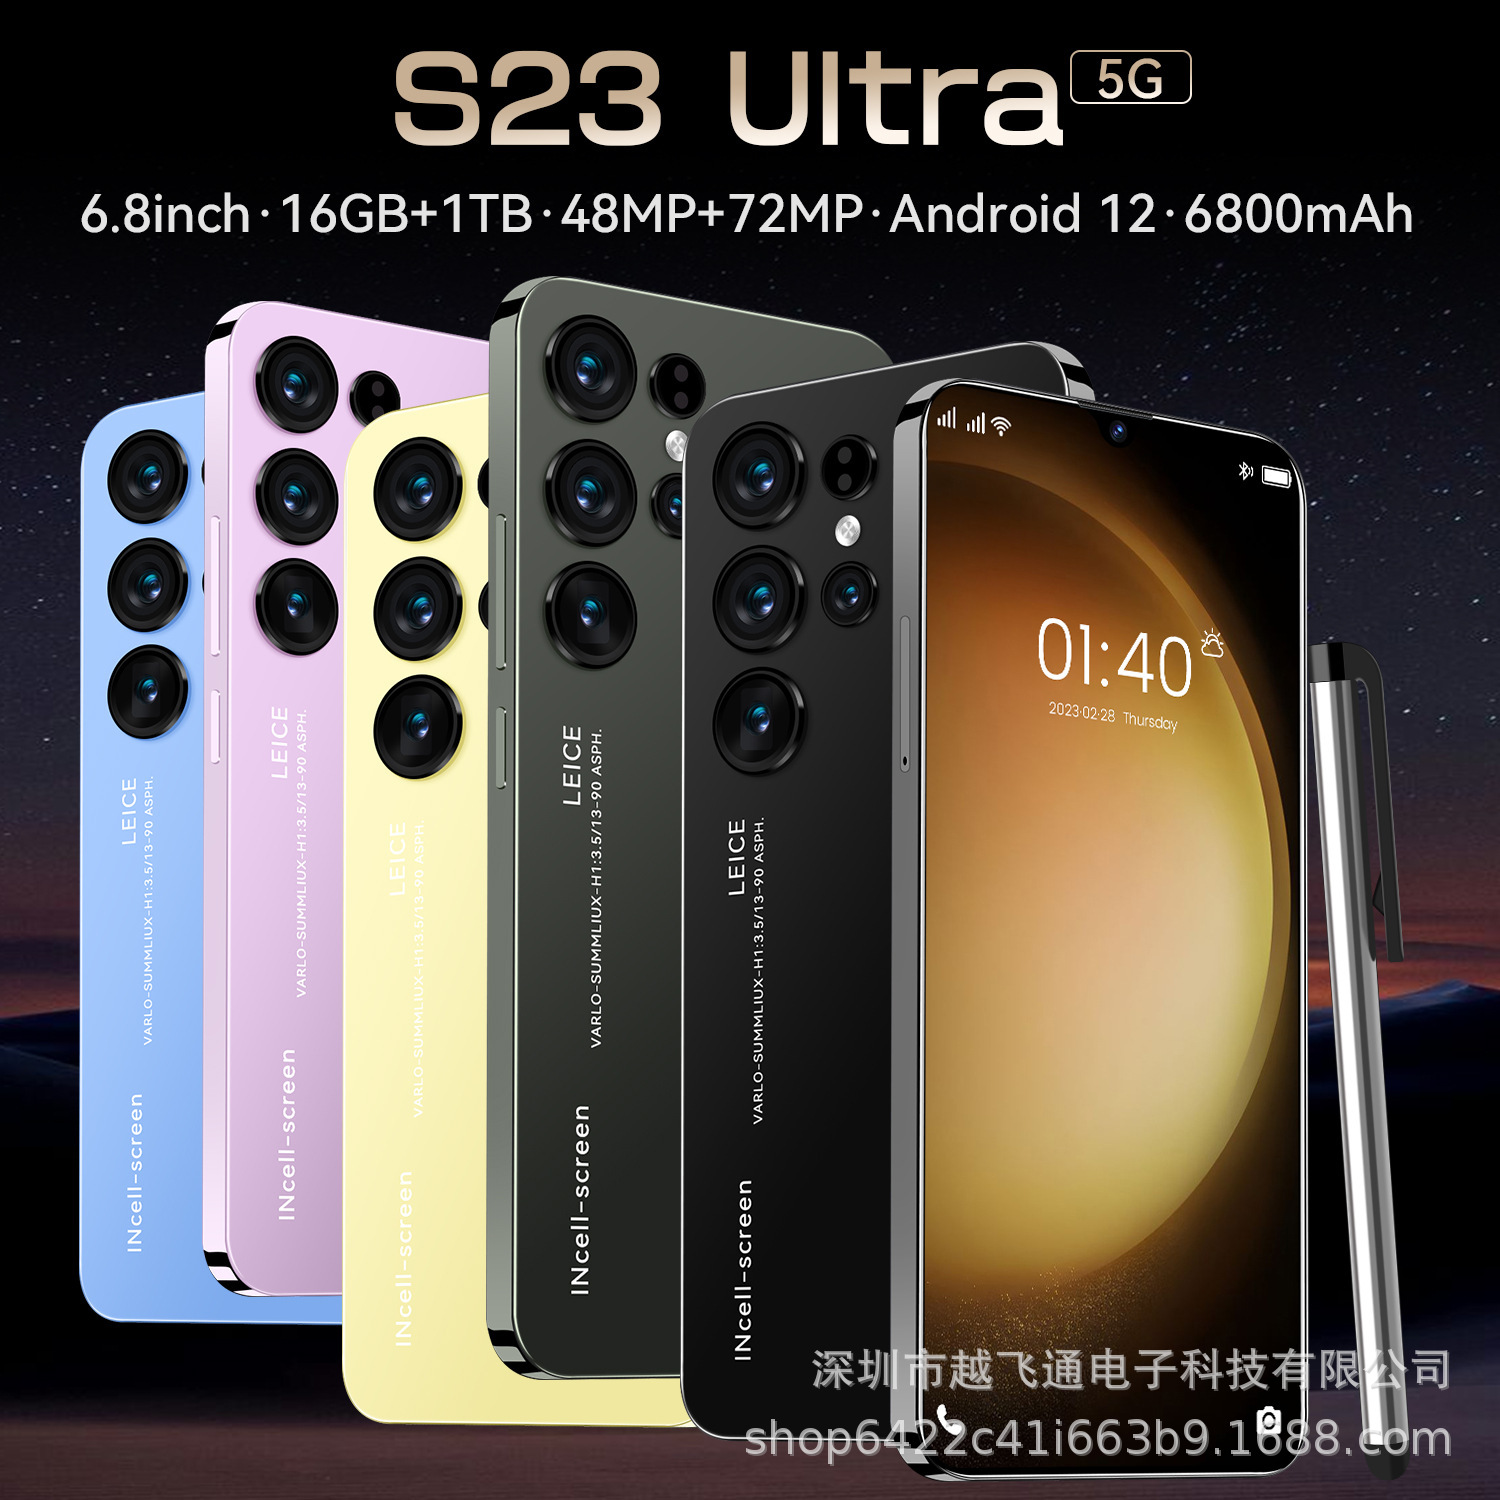 Exclusivité du commerce extérieur pour S23 Ultra Cross-Border Phone Mobile 16 1 To Mémoire 6.8 Source d'écran HD complète Les fabricants peuvent envoyer au nom